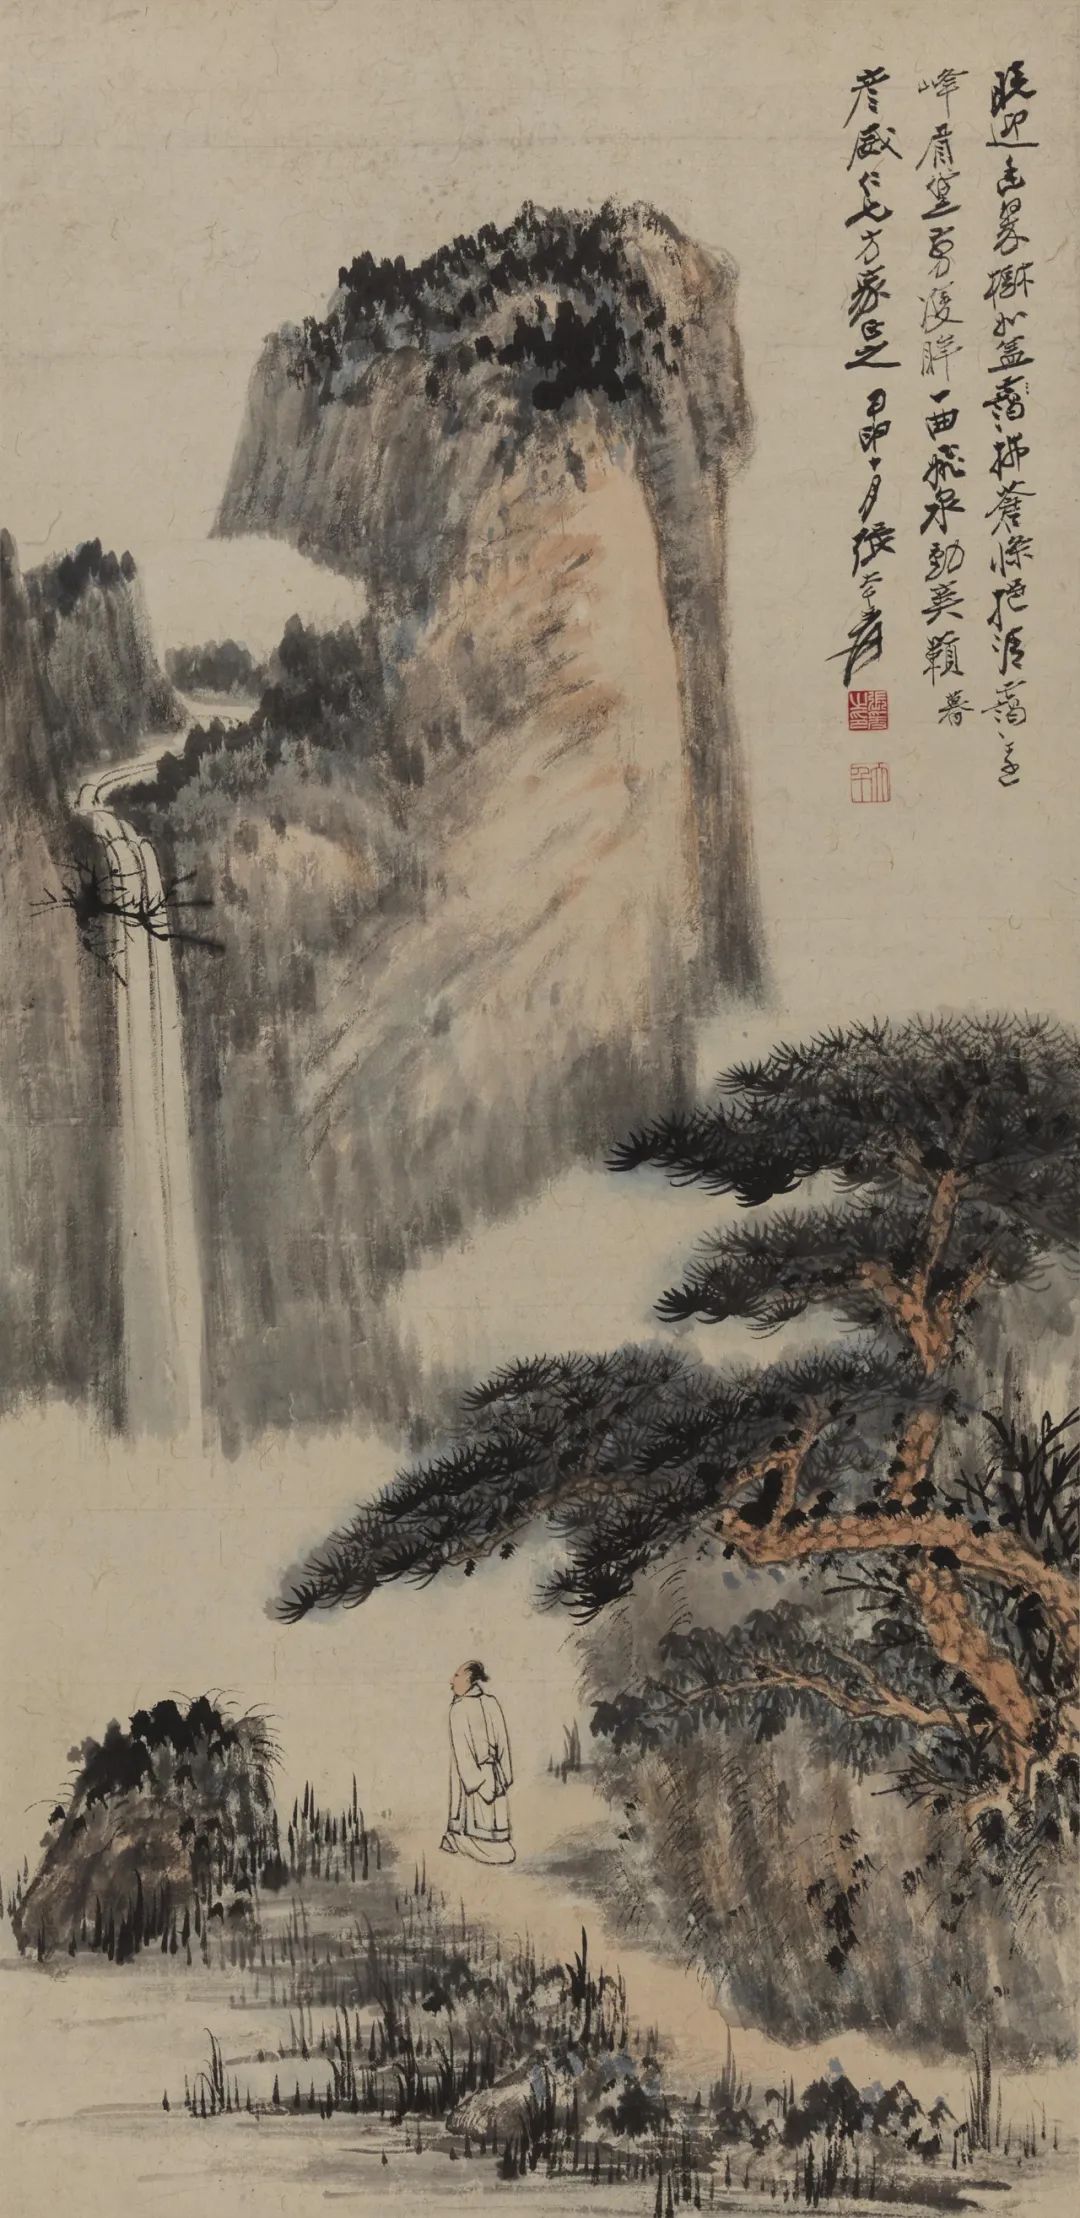 张大千 松荫观瀑 80.8x39.5cm 中国画 1944年 中国美术馆藏